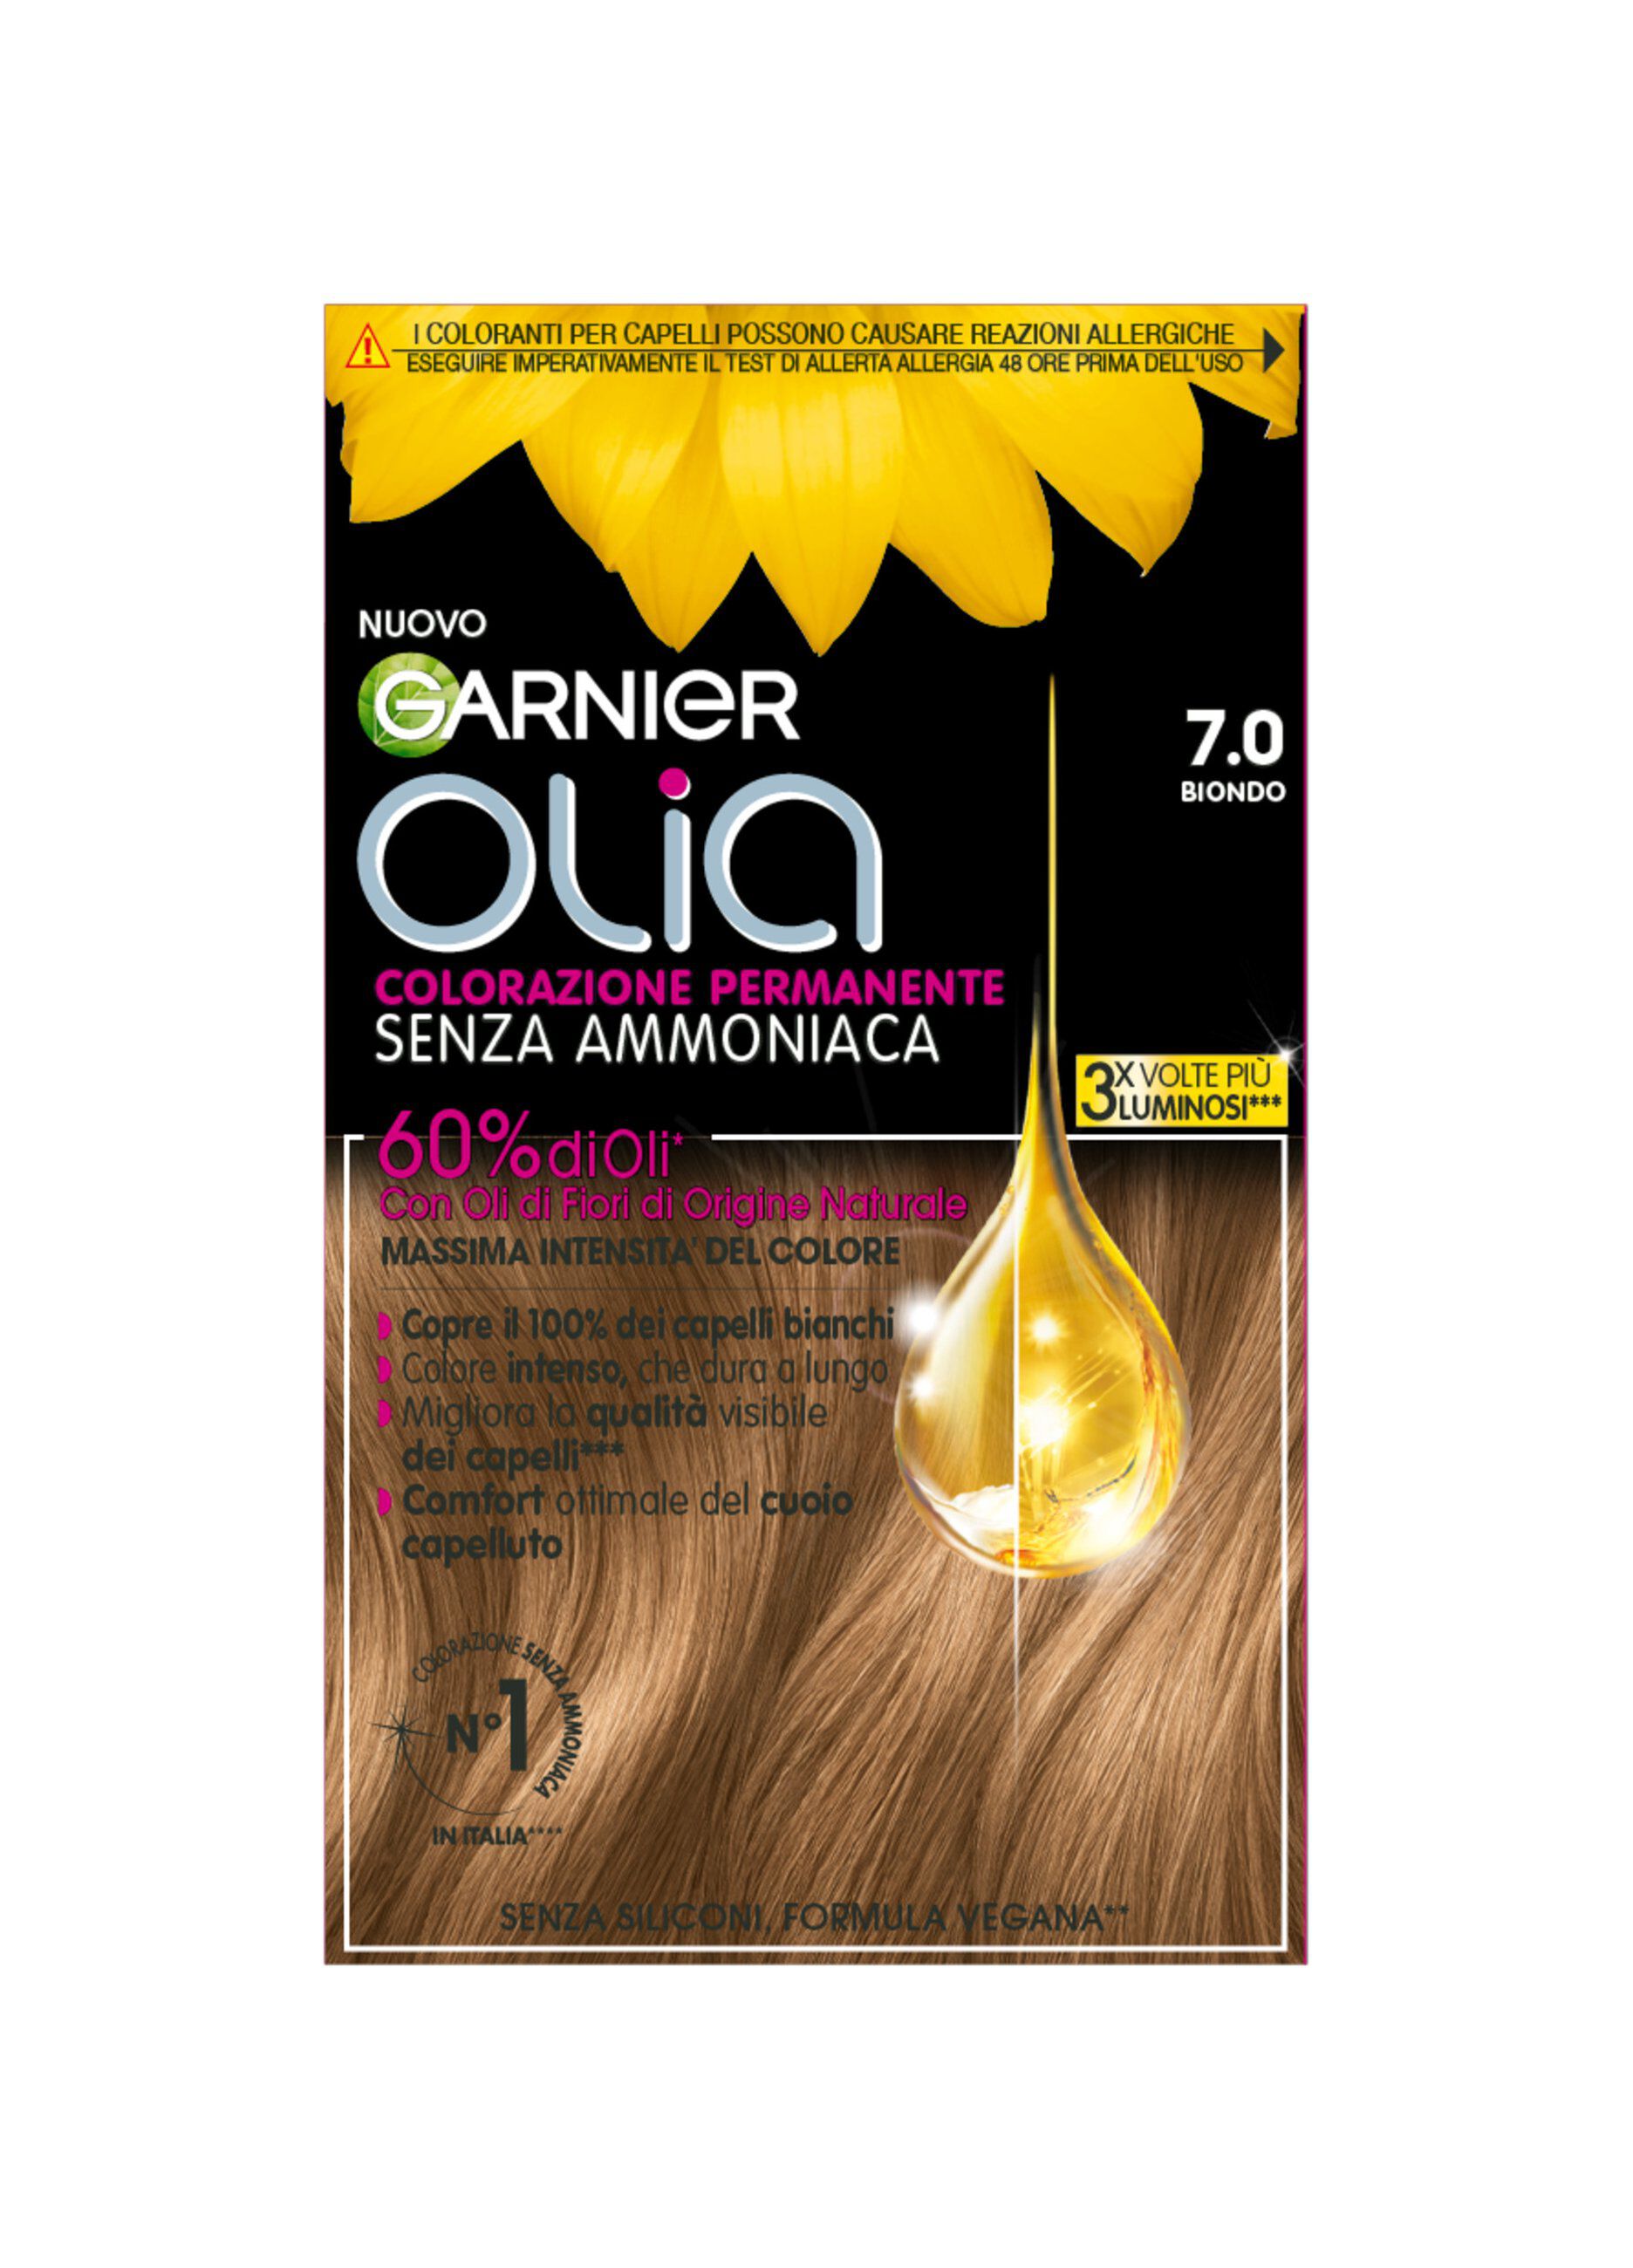 Garnier Tinta Capelli Olia, Colorazione permanente senza ammoniaca, copre il 100% dei capelli bianchi, Con oli di fiori di origine naturale, Biondo (8.0).